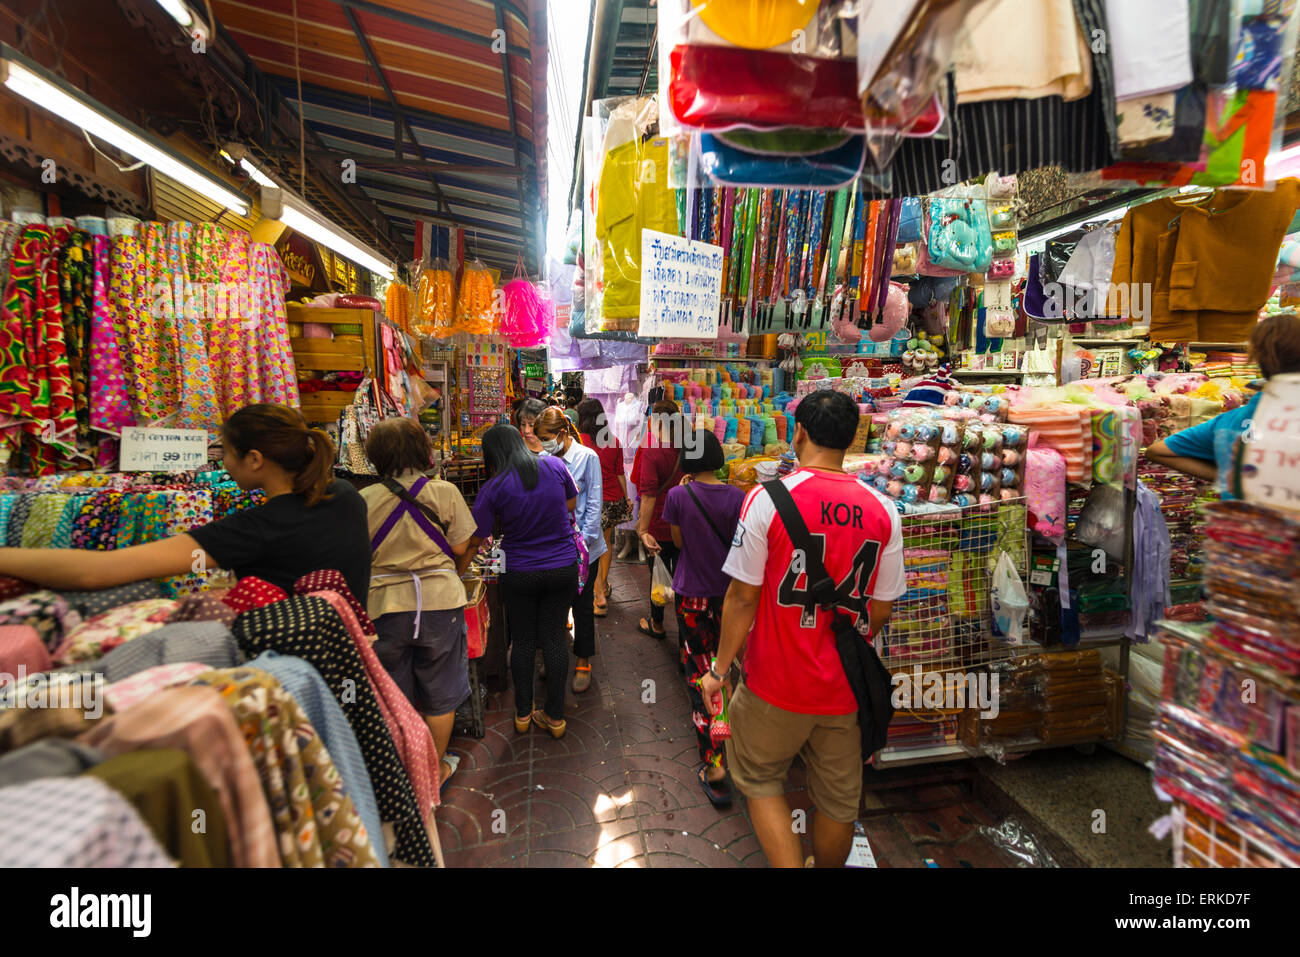 Markt Straße mit Verkaufsständen, Kleidung, Bangkok, Thailand  Stockfotografie - Alamy